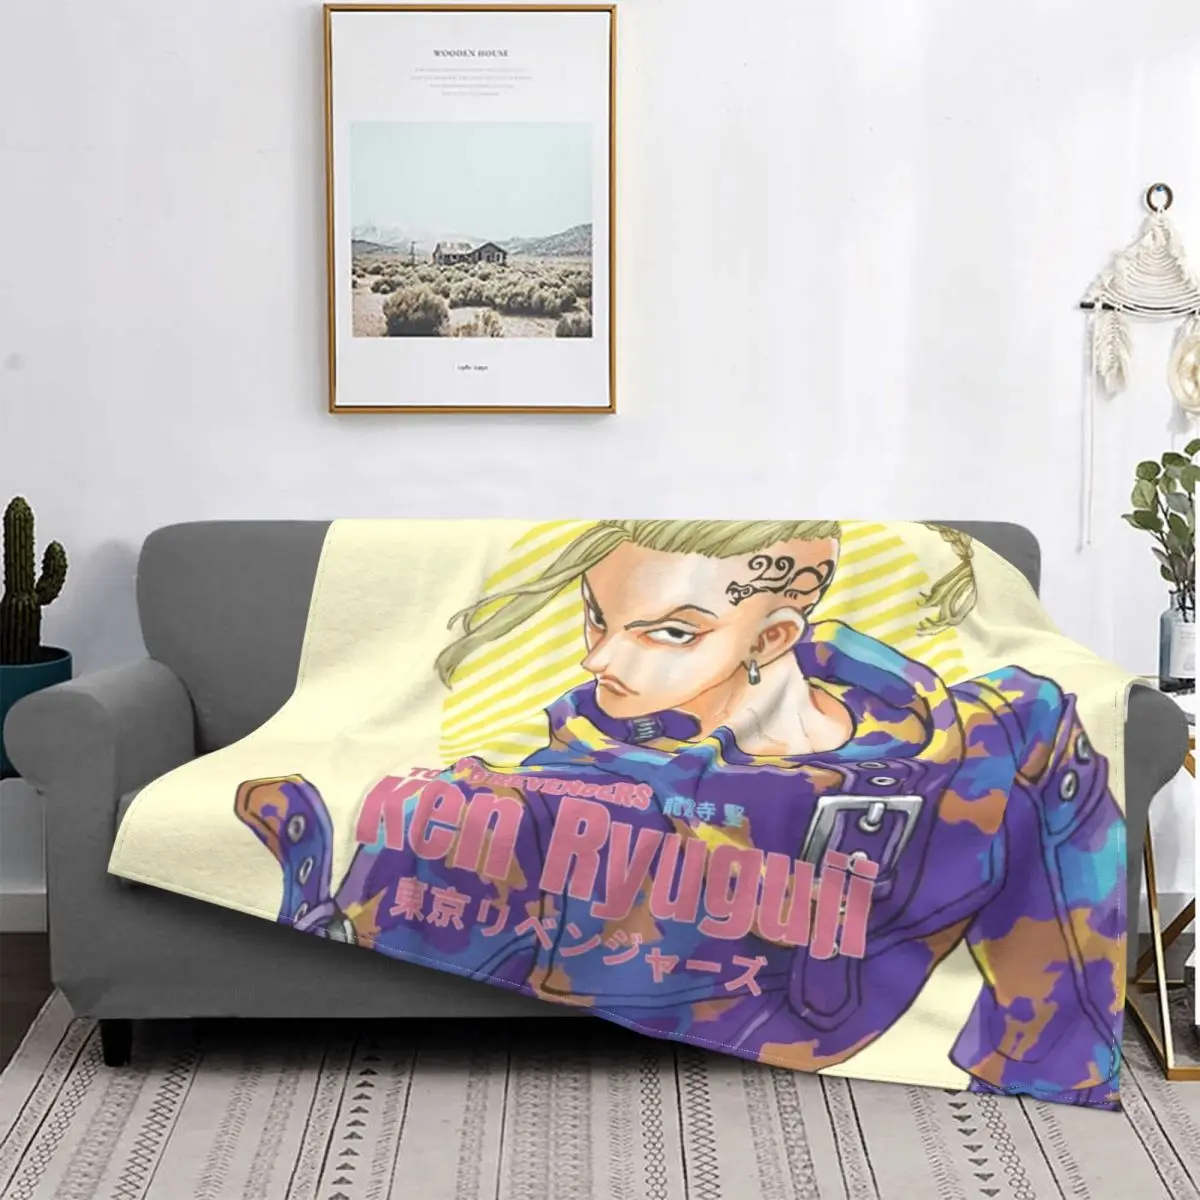 

Ken Ryuguji Blanket Anime Manga Tokyo Revengers Bedspread Plush Soft Cover Flannel Spread Bedding Sofa Office Velvet Outlet Gift